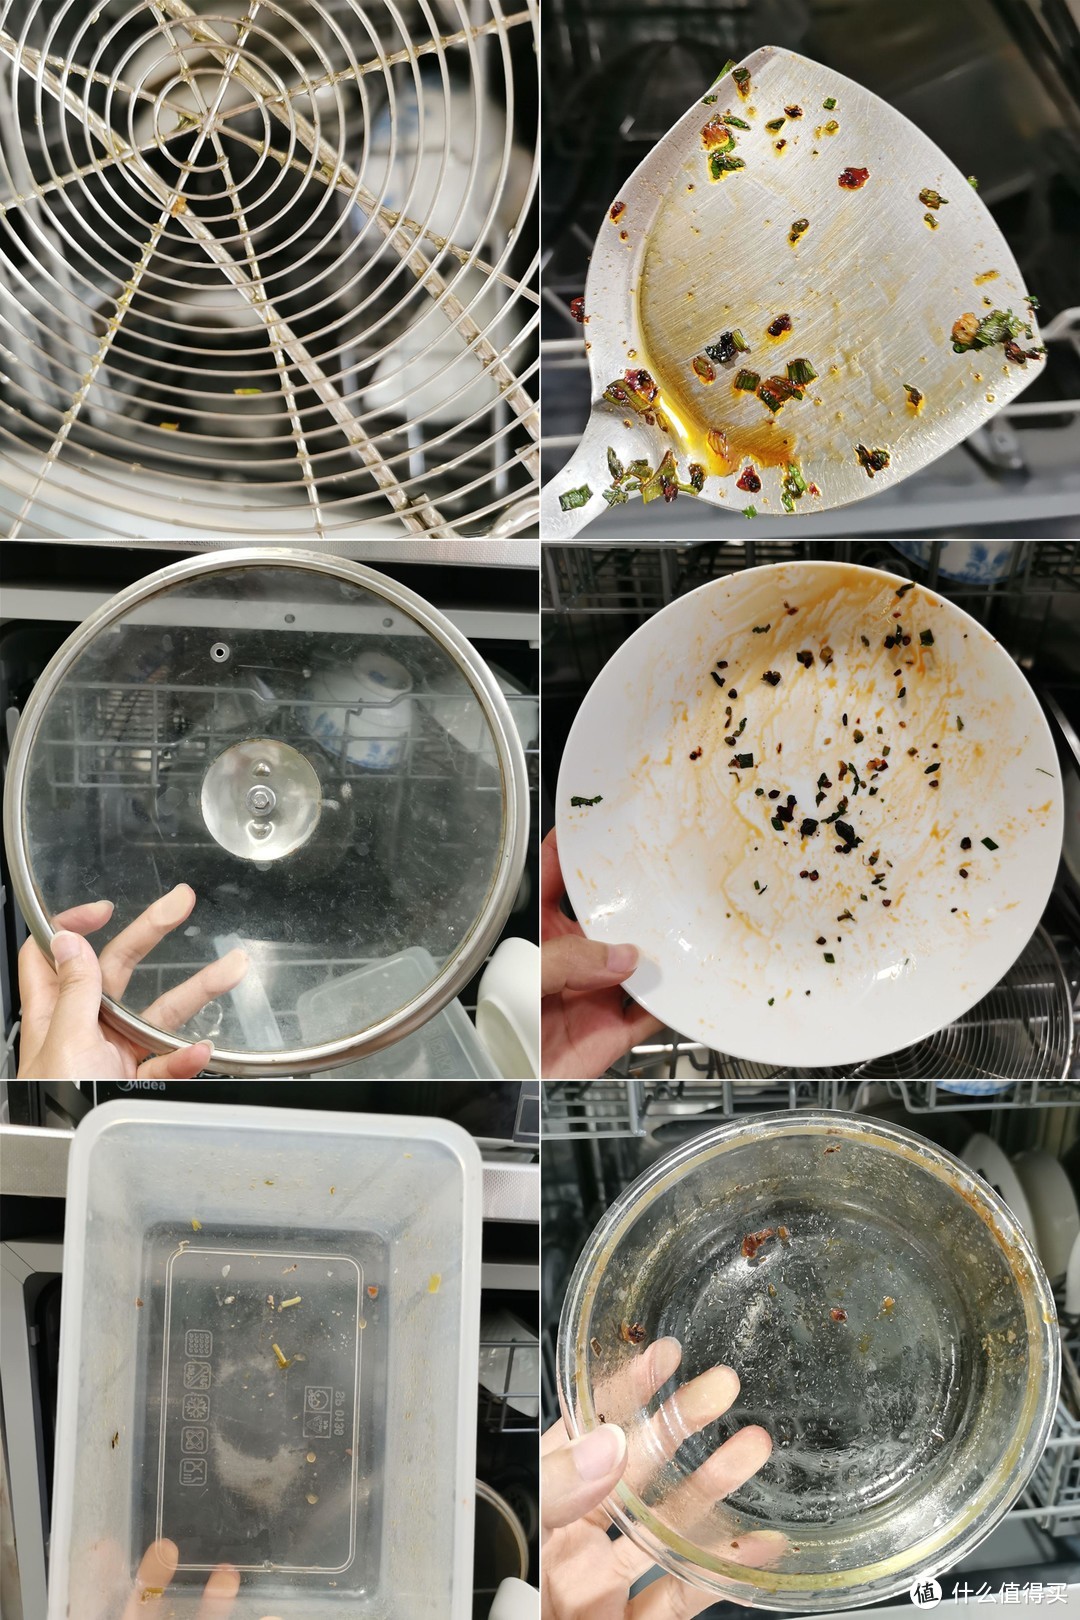 10项测试、历时8天、万字测评，史上最详尽的洗碗机耗材对比横评来了！